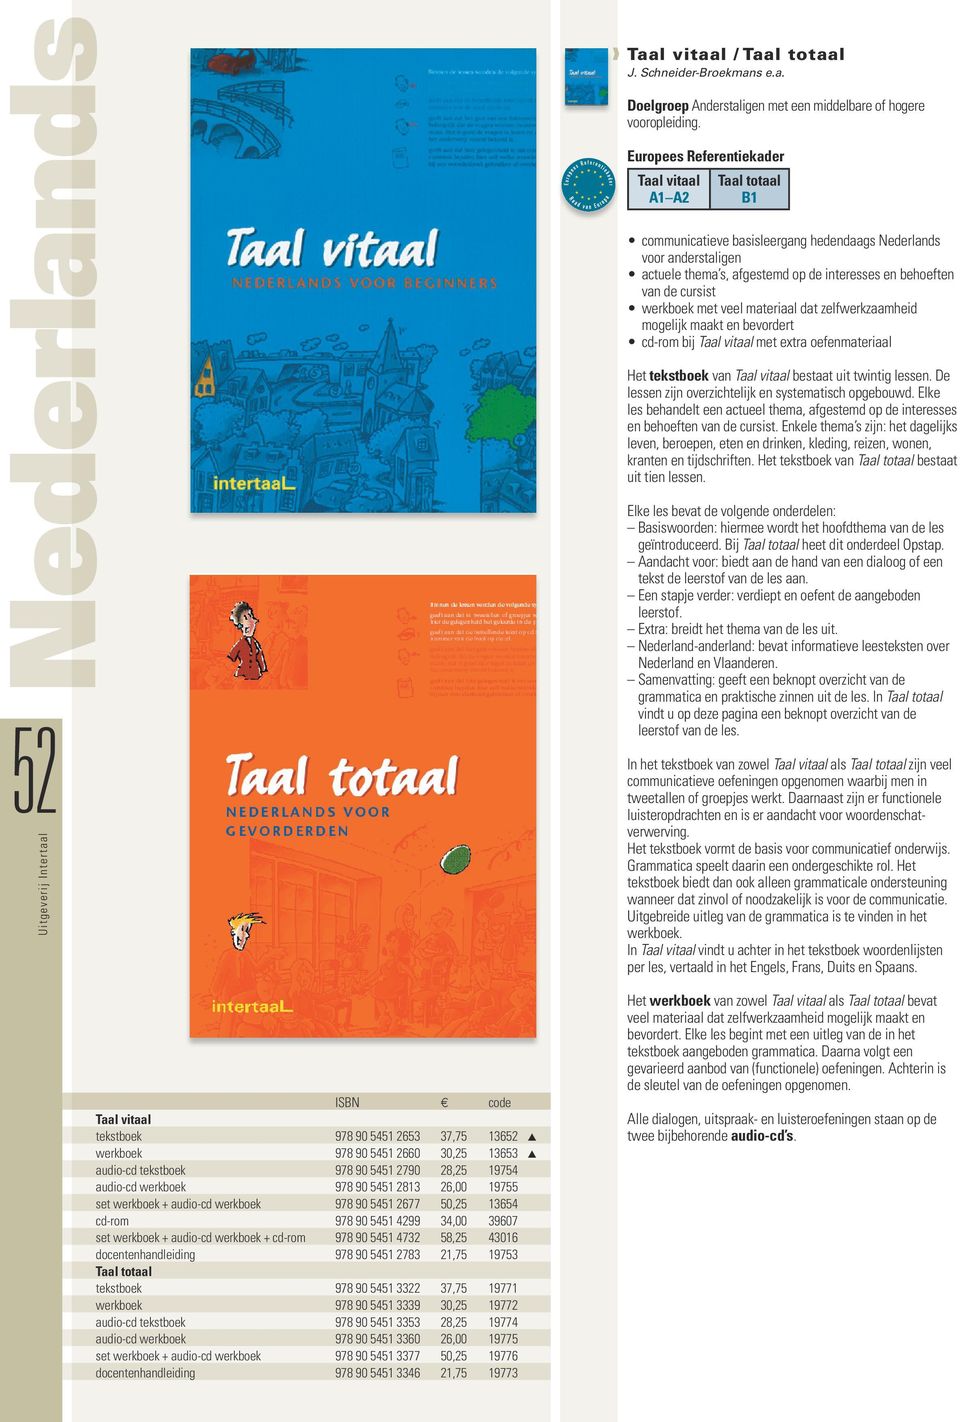 werkboek met veel materiaal dat zelfwerkzaamheid mogelijk maakt en bevordert cd-rom bij Taal vitaal met extra oefenmateriaal Het tekstboek van Taal vitaal bestaat uit twintig lessen.